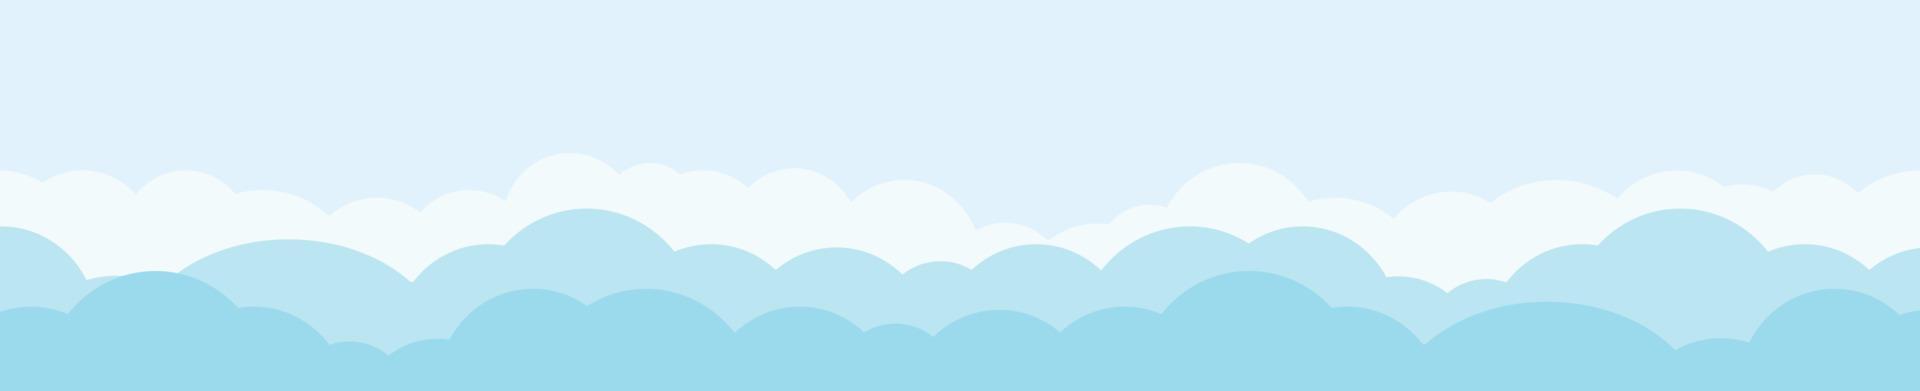 wolken en lucht, weer natuur achtergrond, horizontale banner, vectorillustratie. vector